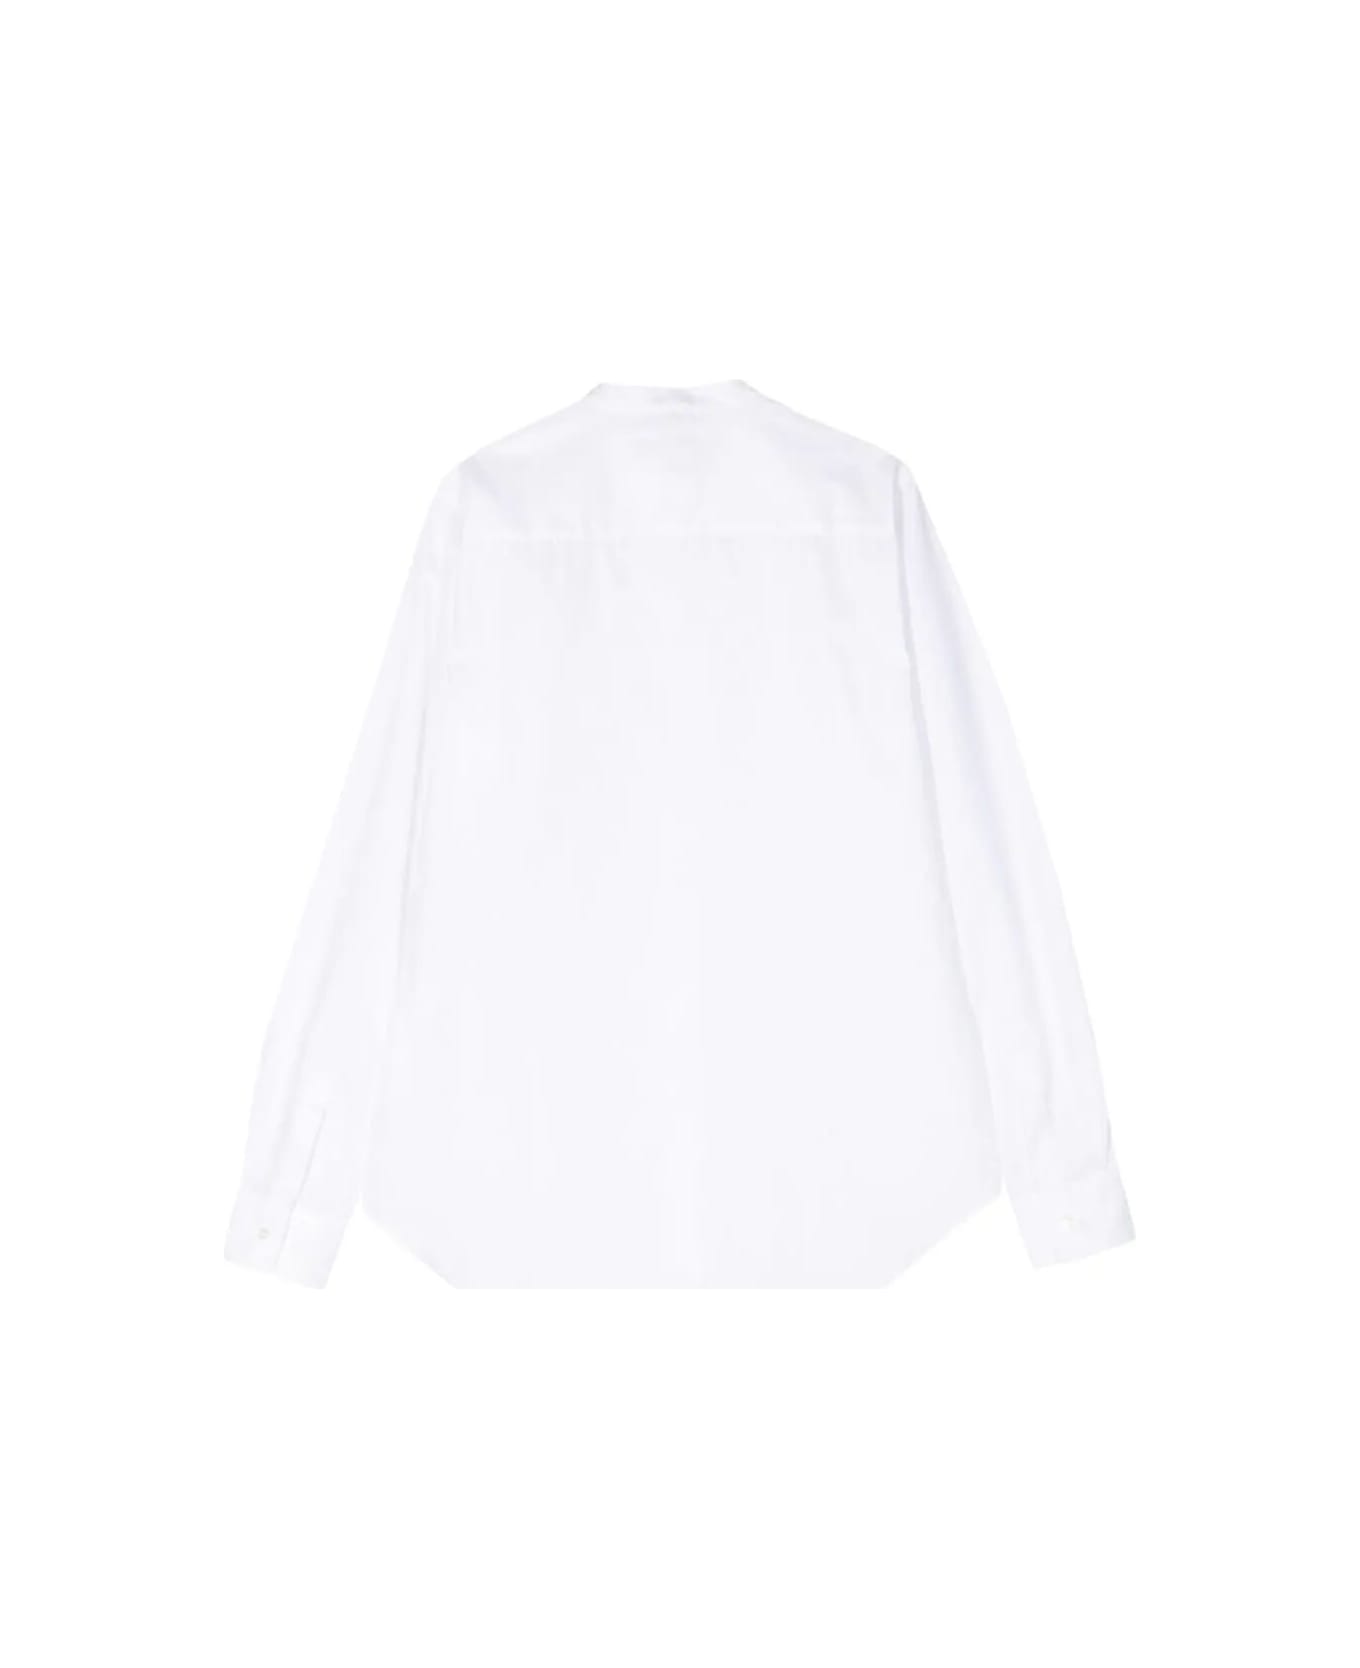 Aspesi Mod 5416 Shirt - White シャツ